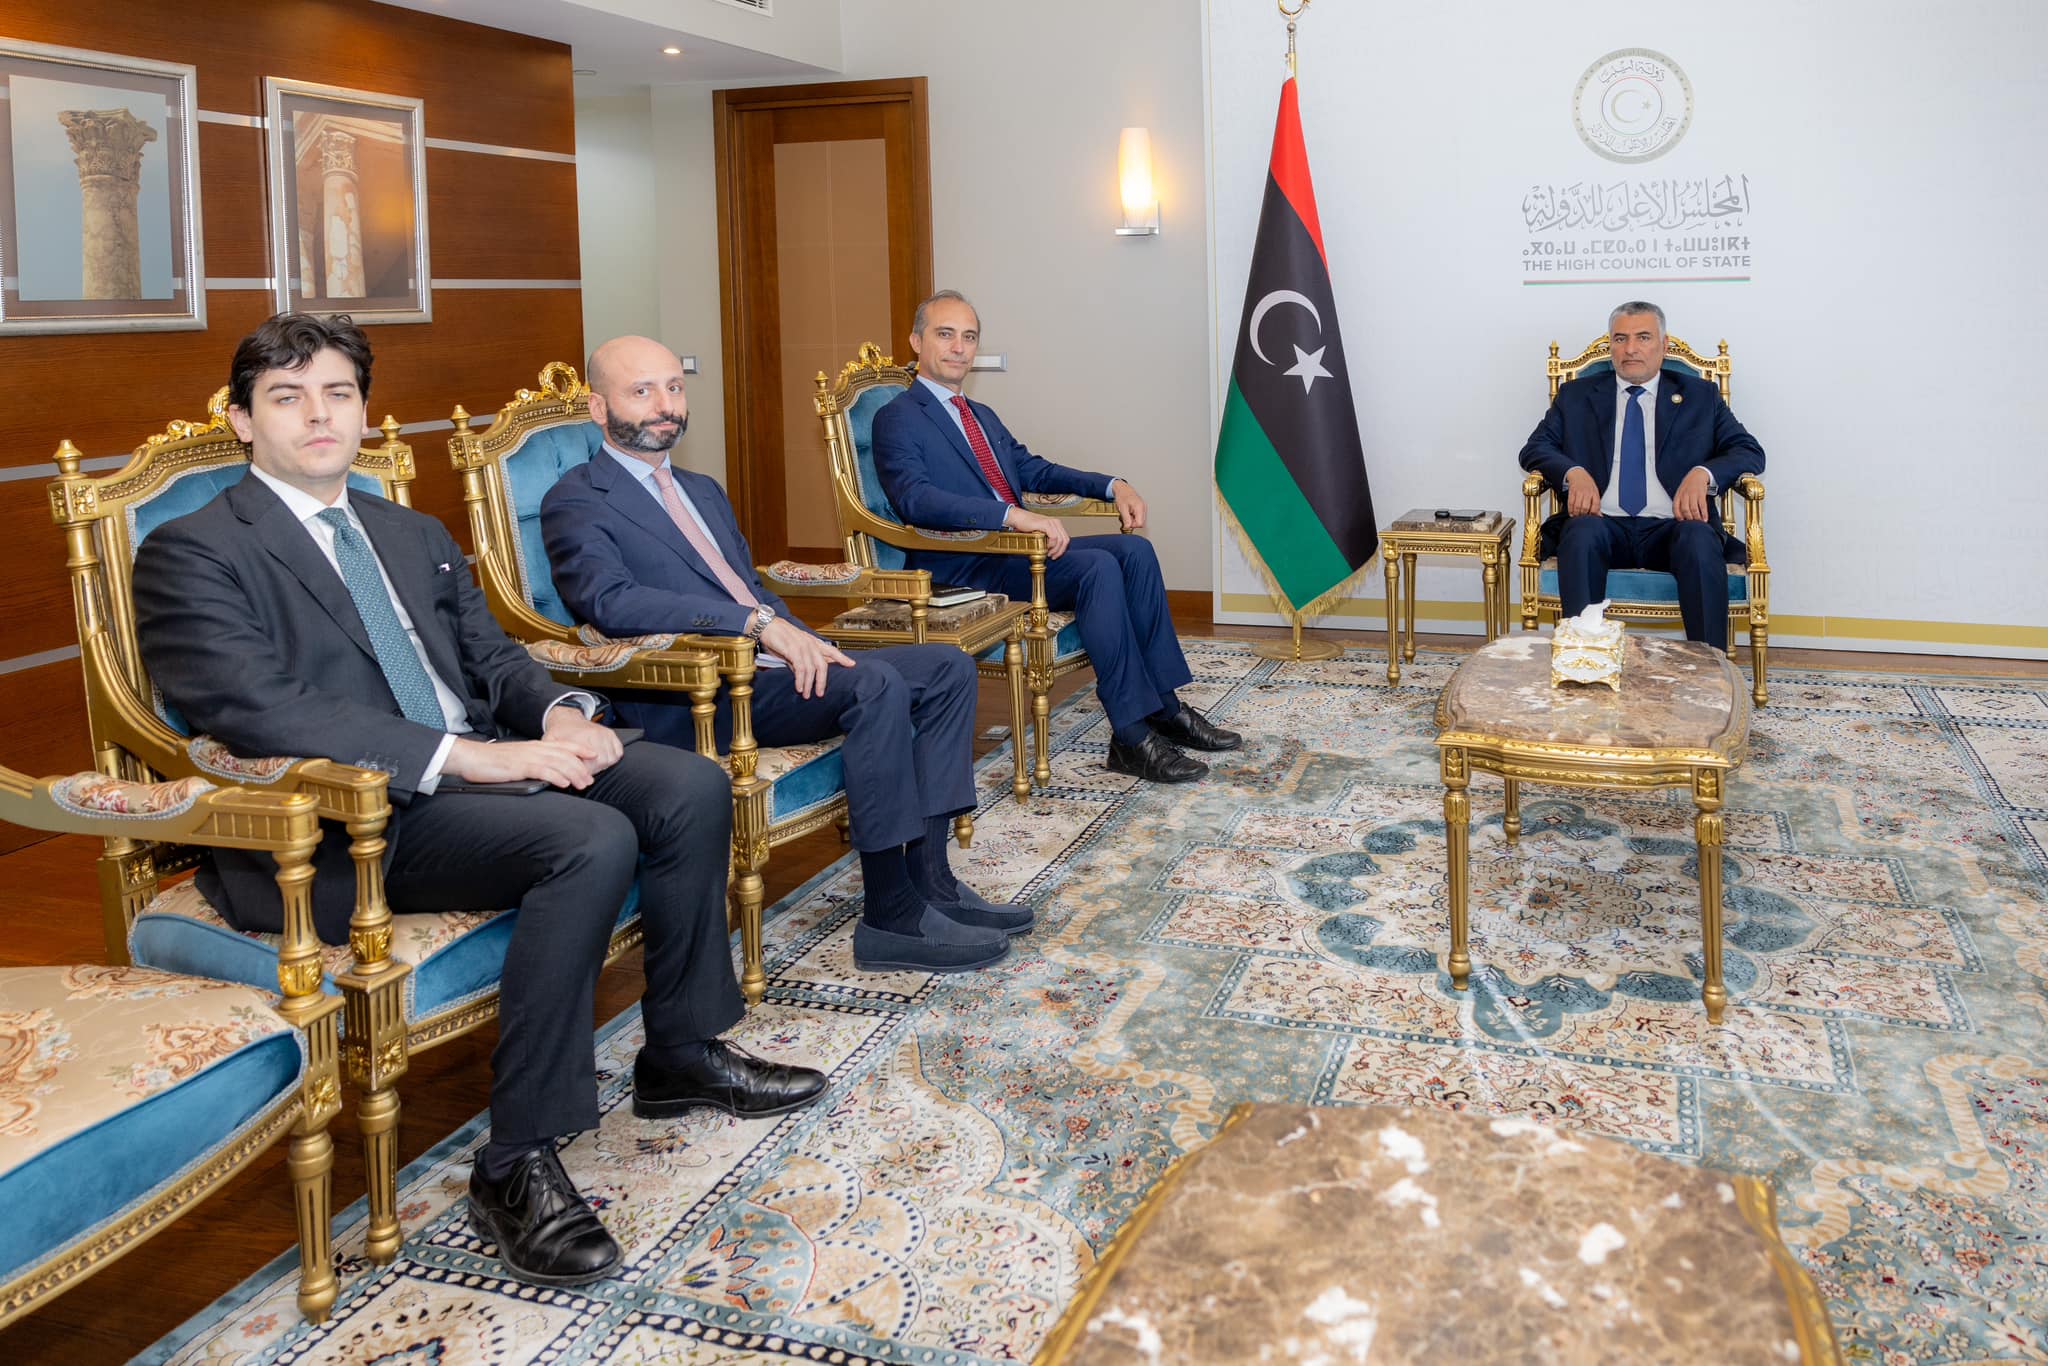 تكالة والسفير الإيطالي لدى ليبيا يناقشان الوضع السياسي في البلاد والحلول المقترحة بعد فشل المبعوث الأممي وتقديمه استقالته.